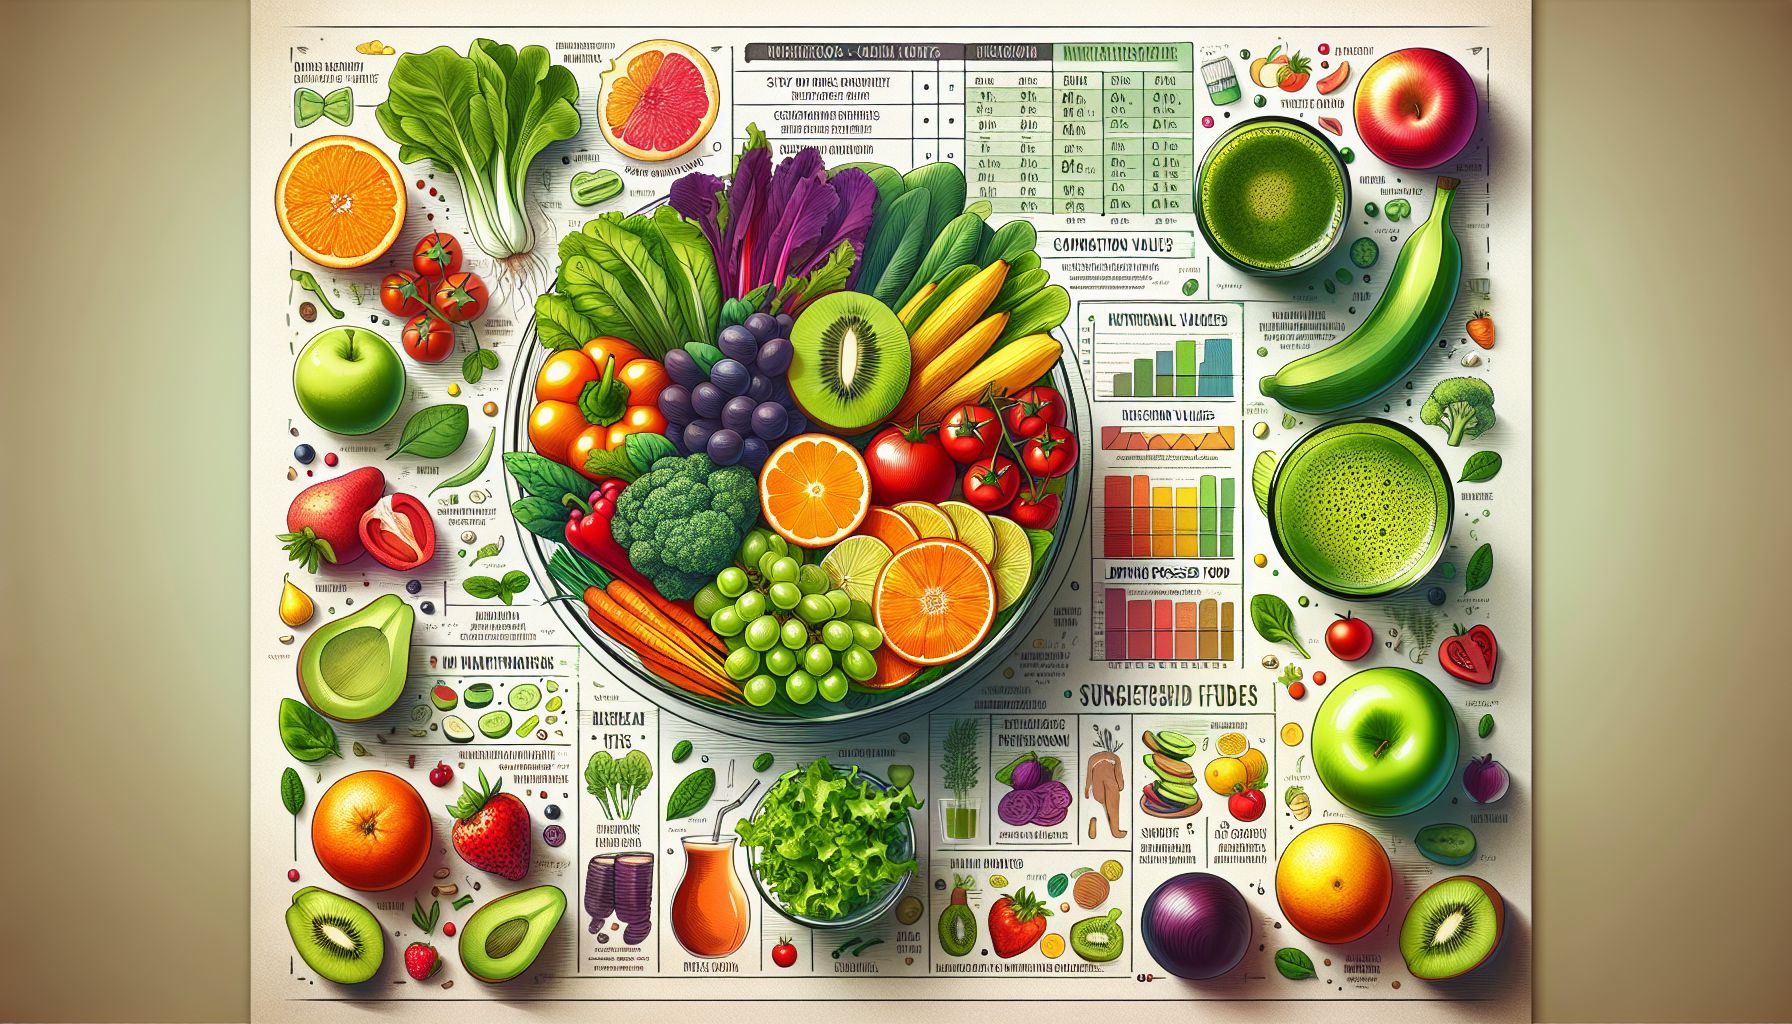 Gezond leven: Tips voor een gebalanceerd voedingspatroon